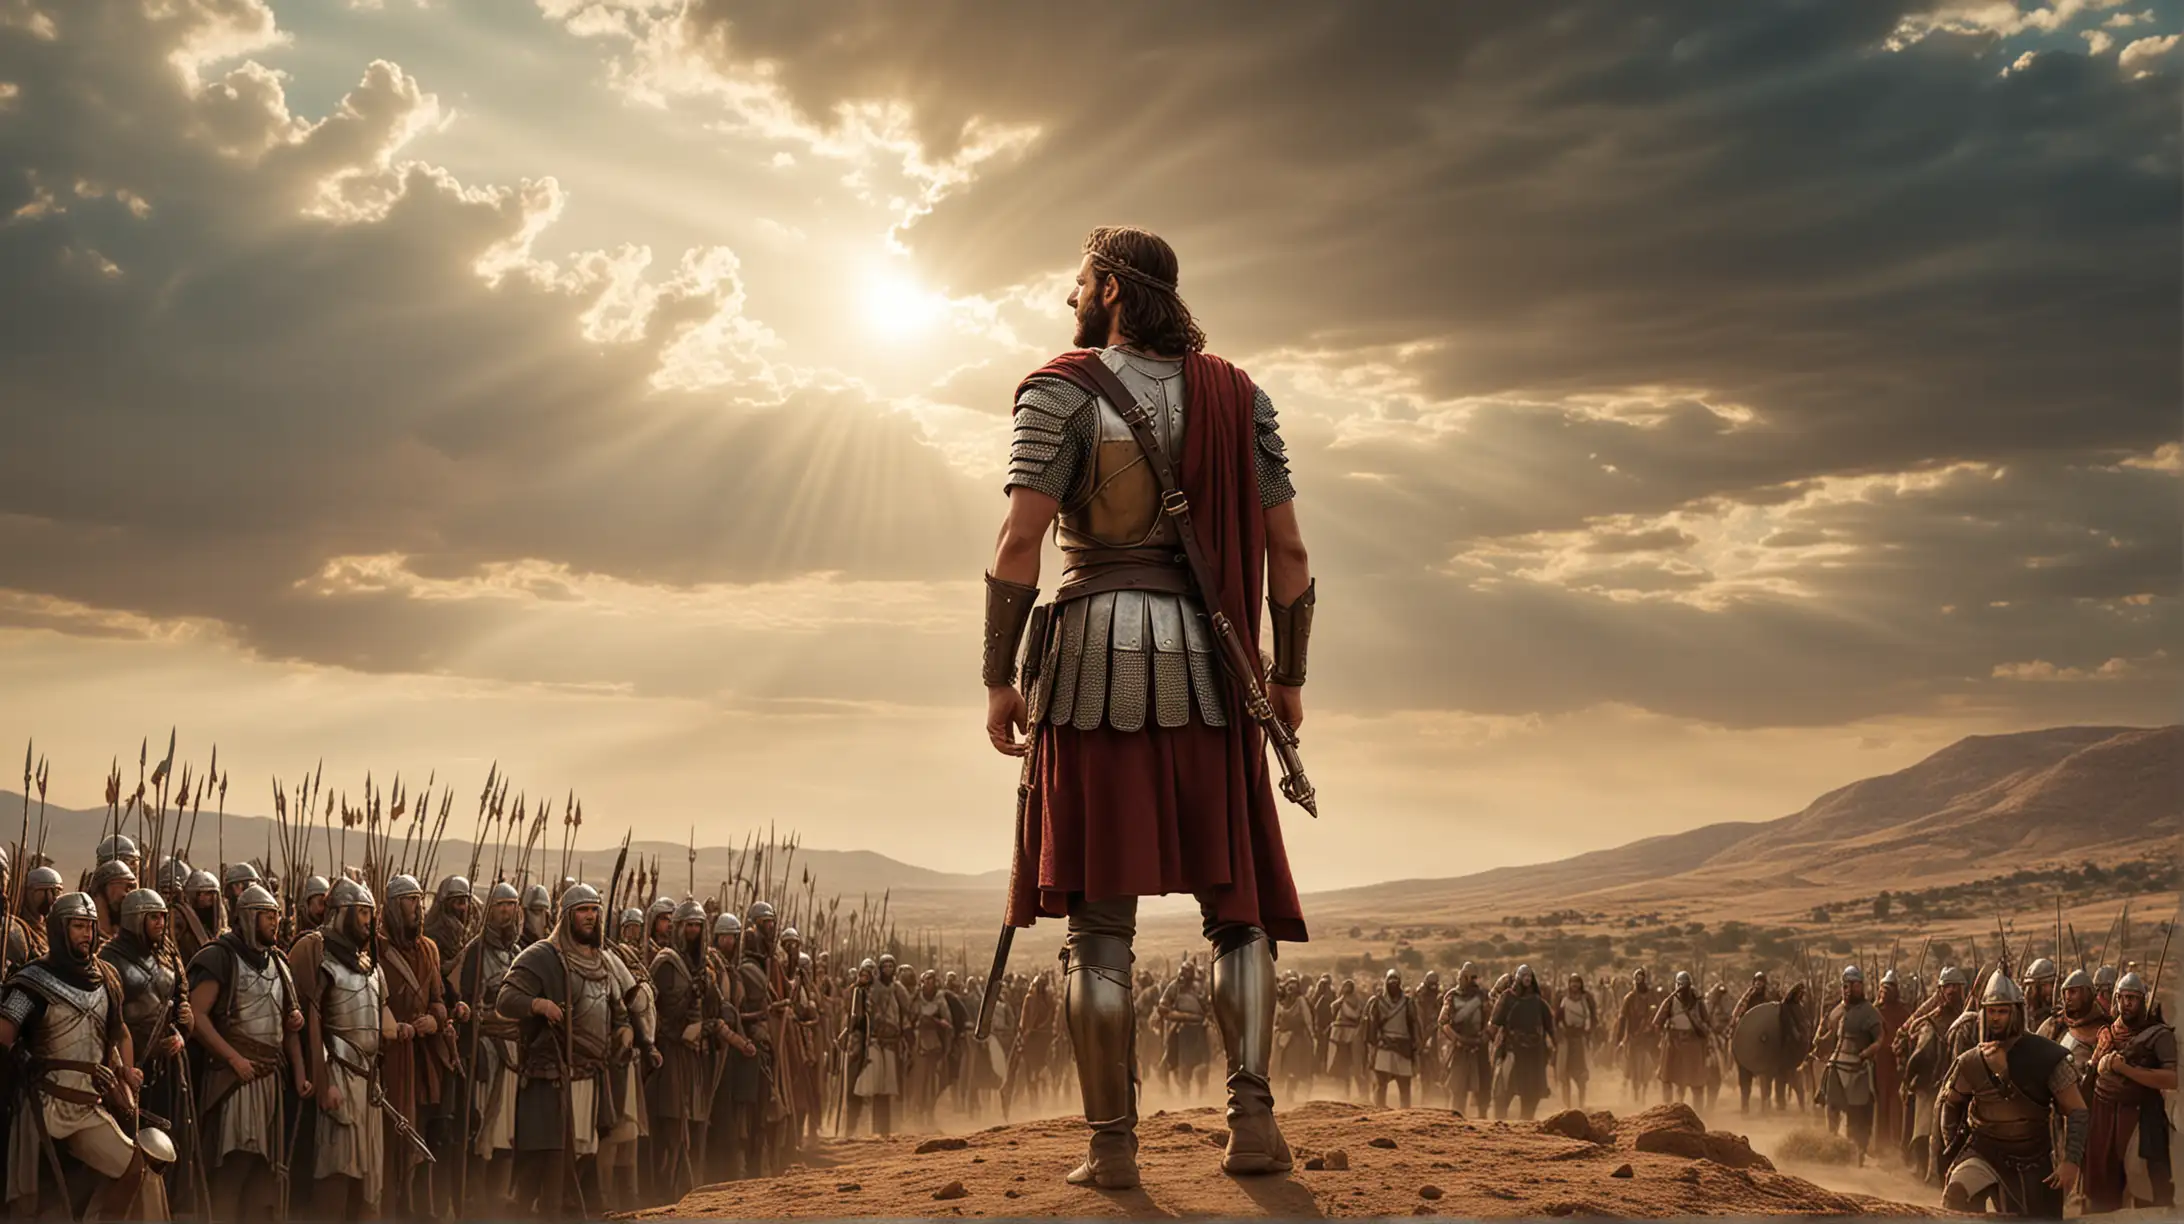 King David Leading Warriors in Epic Desert Battle Scene